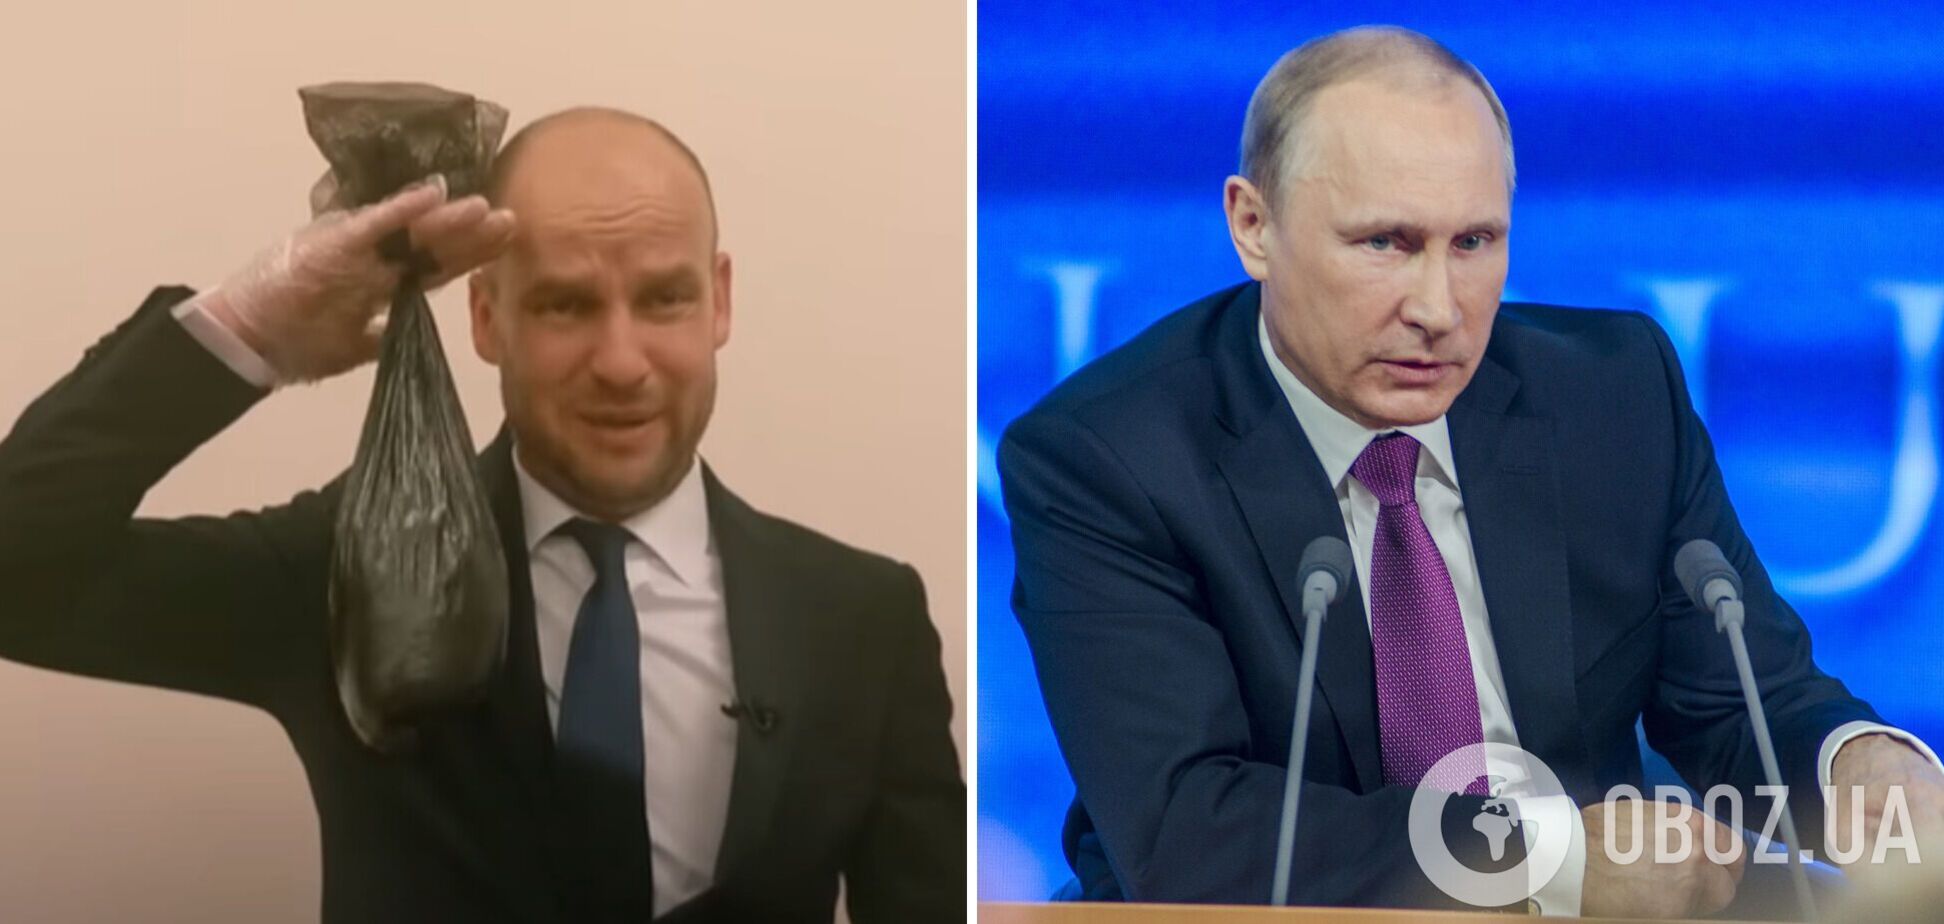 Сеть рассмешило 'интервью' с охранником Путина, который собирает его фекалии. Видео